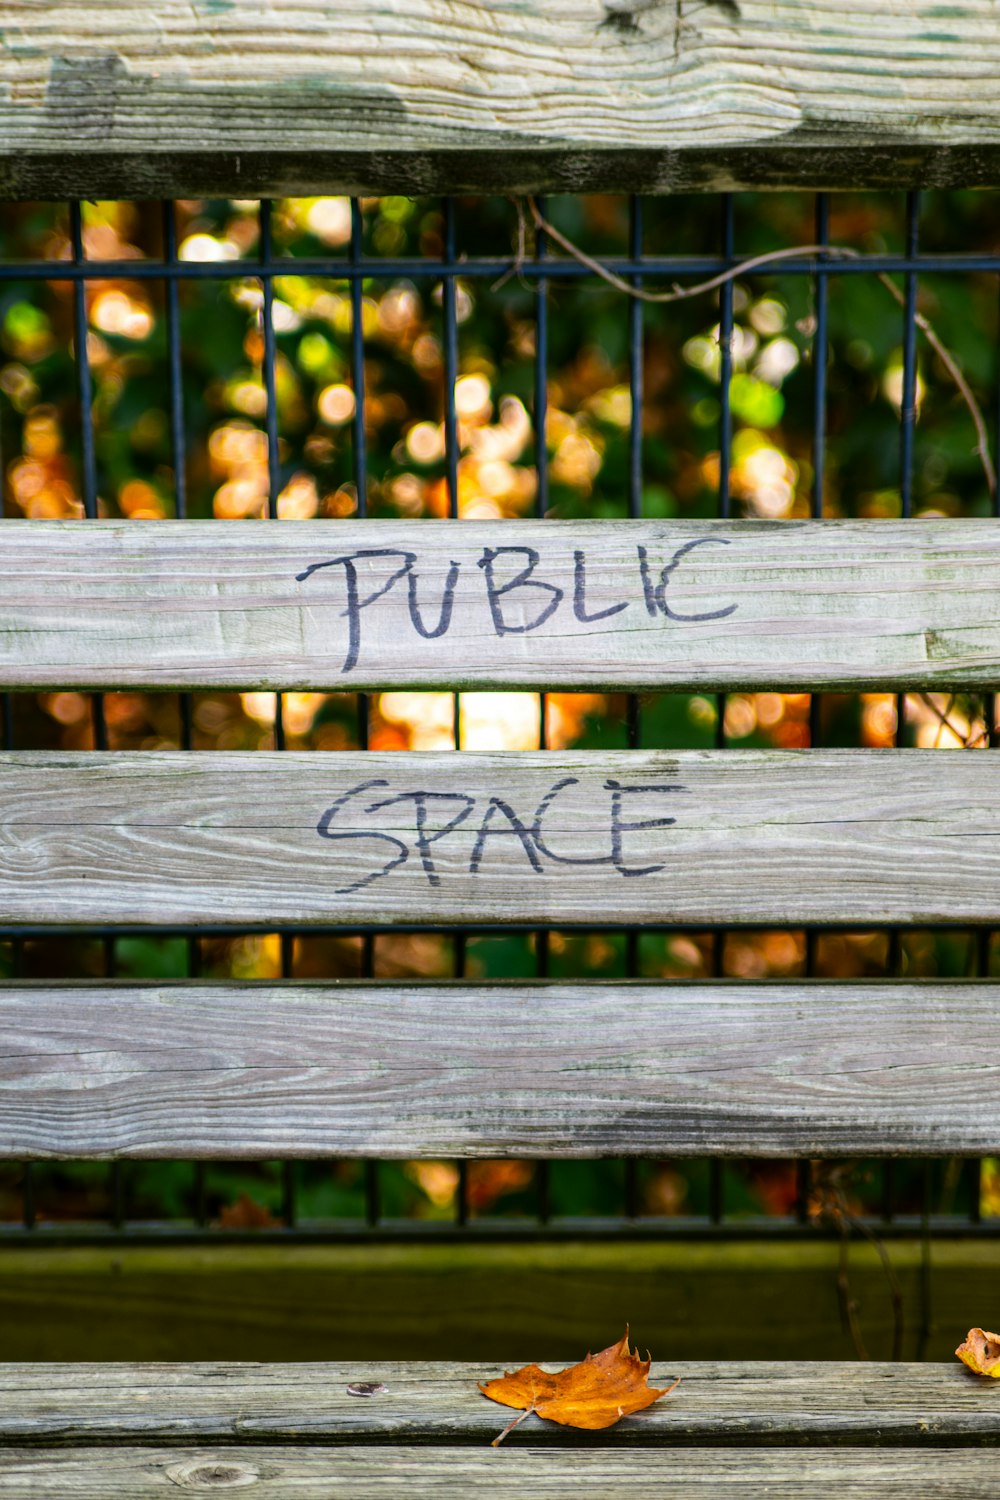 moldura de madeira marrom com sinal de espaço público